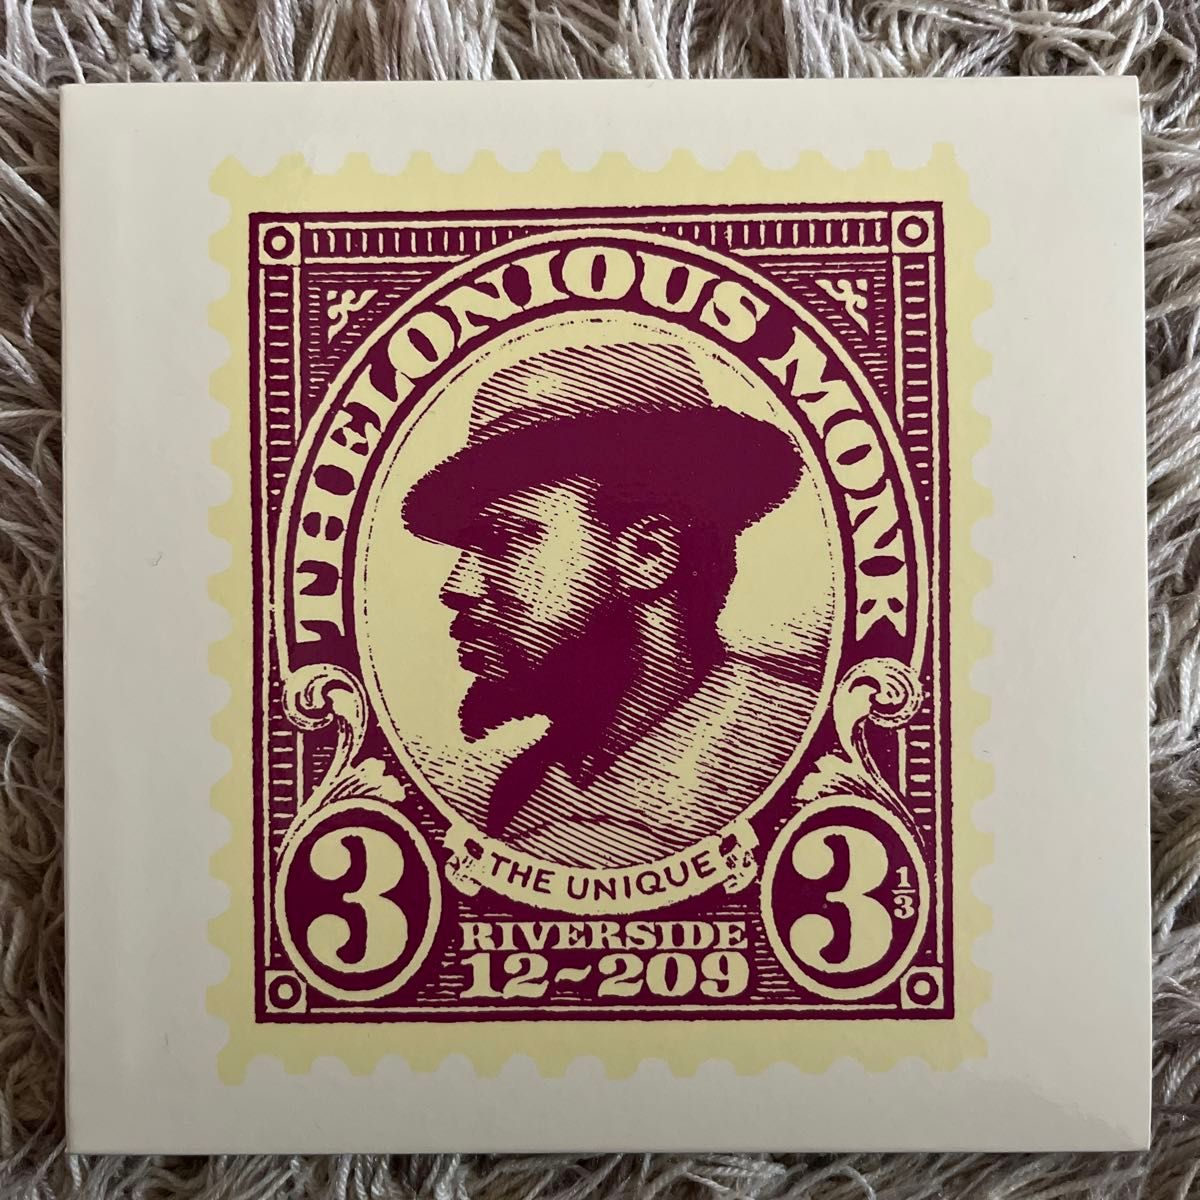 thelonious monk  the unique セロニアス・モンク　ザ・ユニーク　国内盤CD　限定紙ジャケット